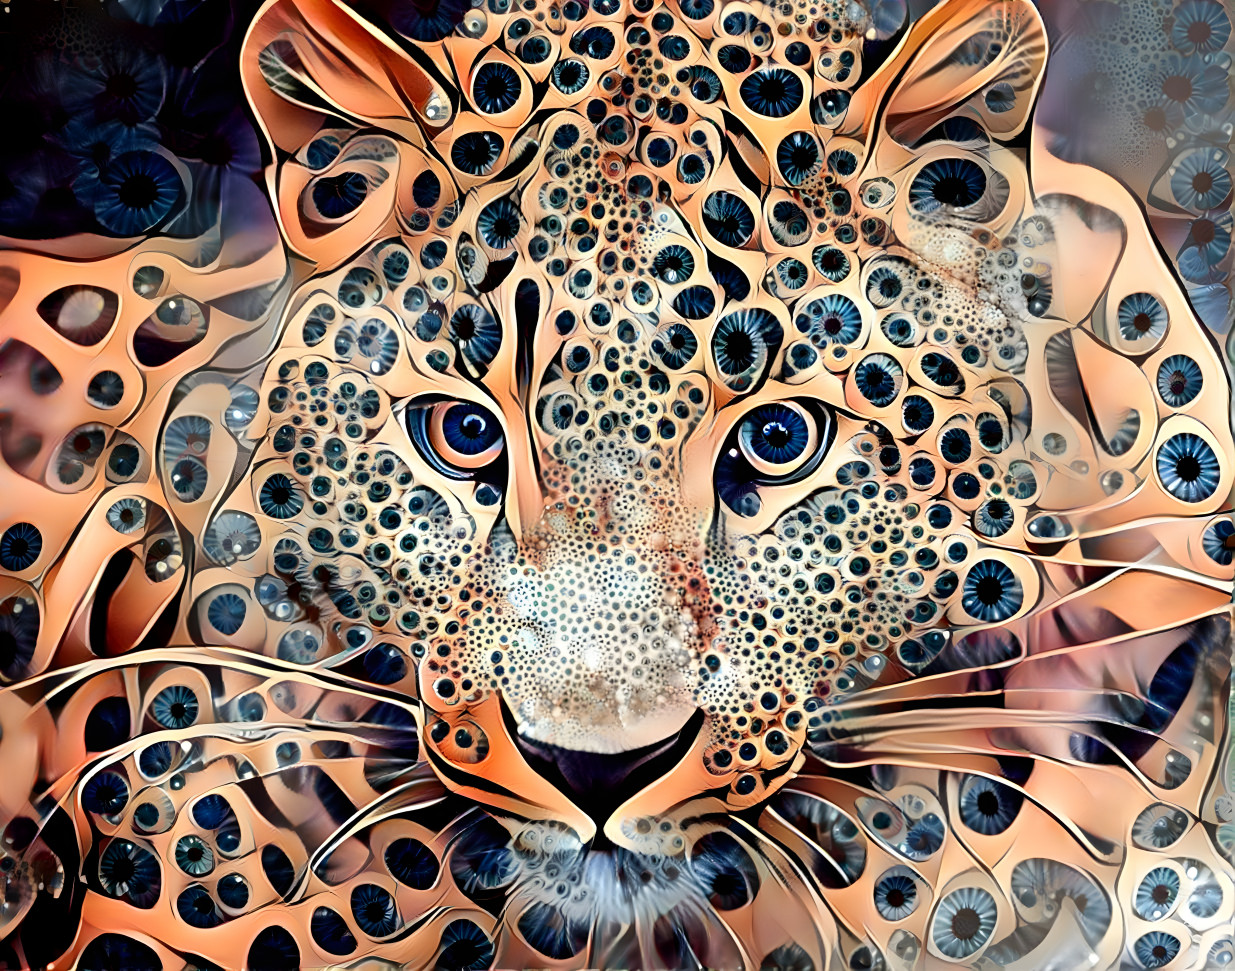 A Leopard Changes Its Spots